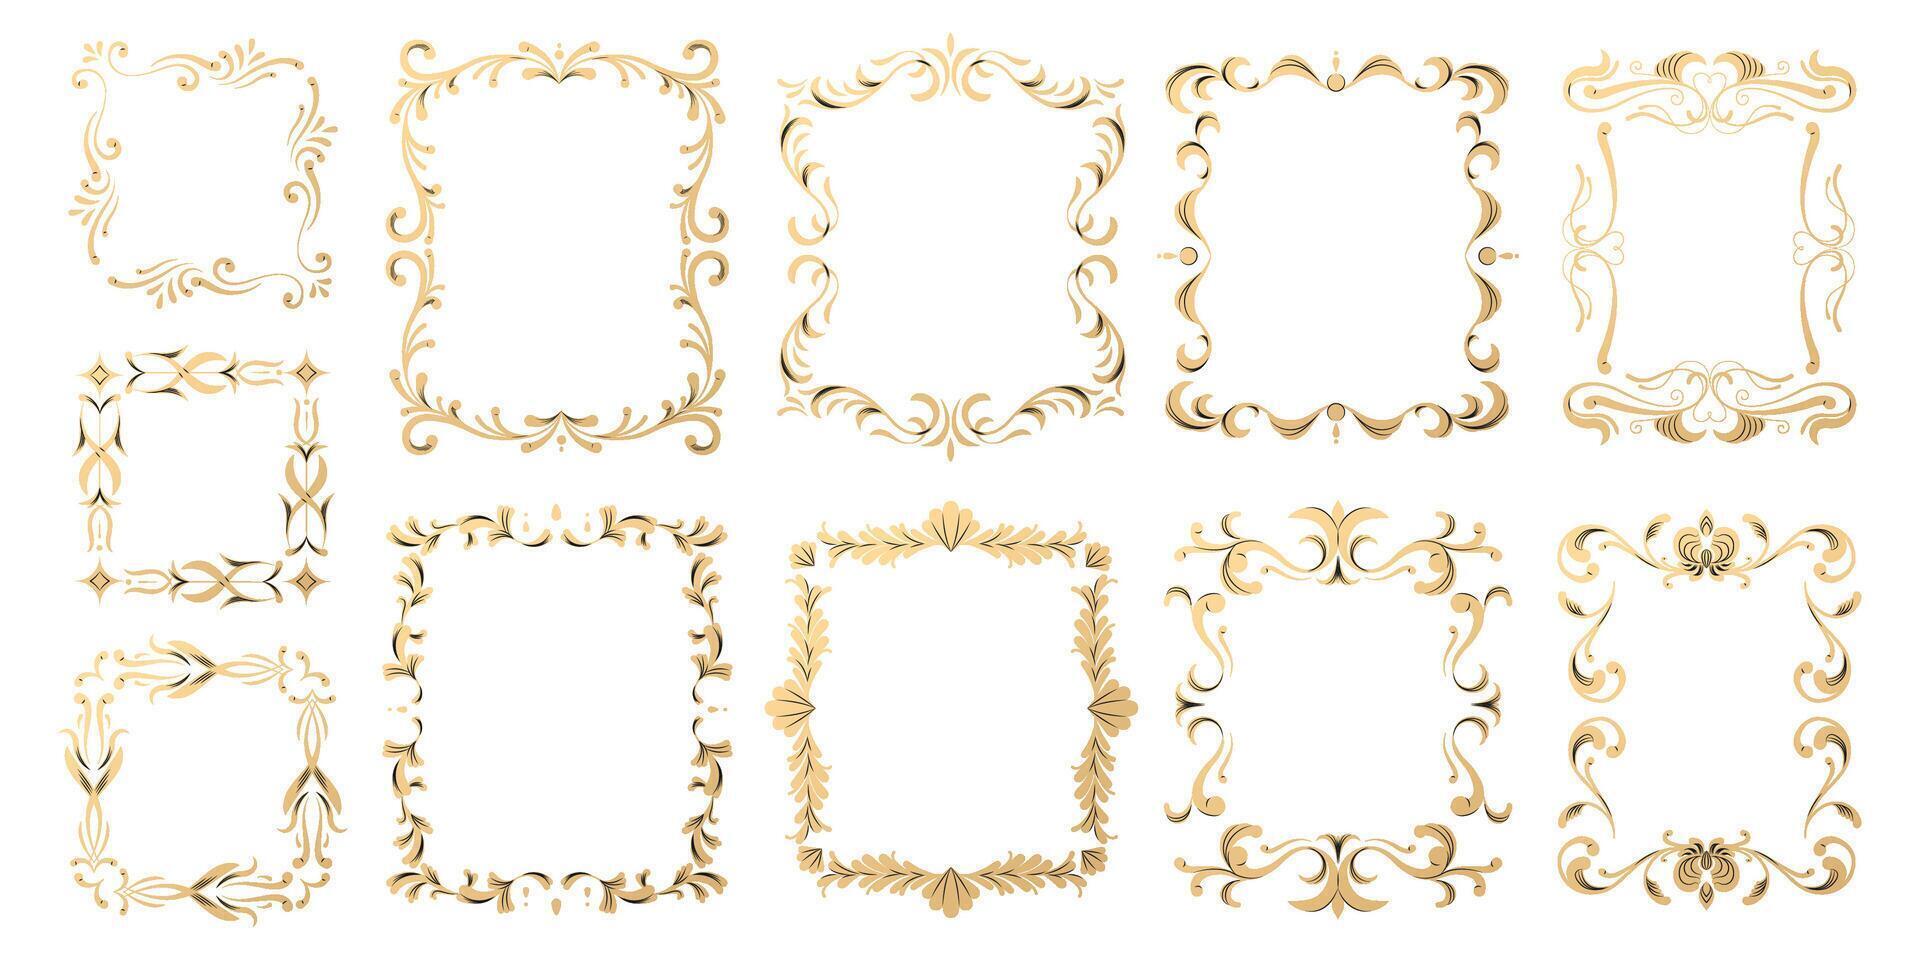 lujo ornamental marcos elegante decorativo fronteras con florecer decoración, antiguo oro marco y flor fronteras vector ilustración